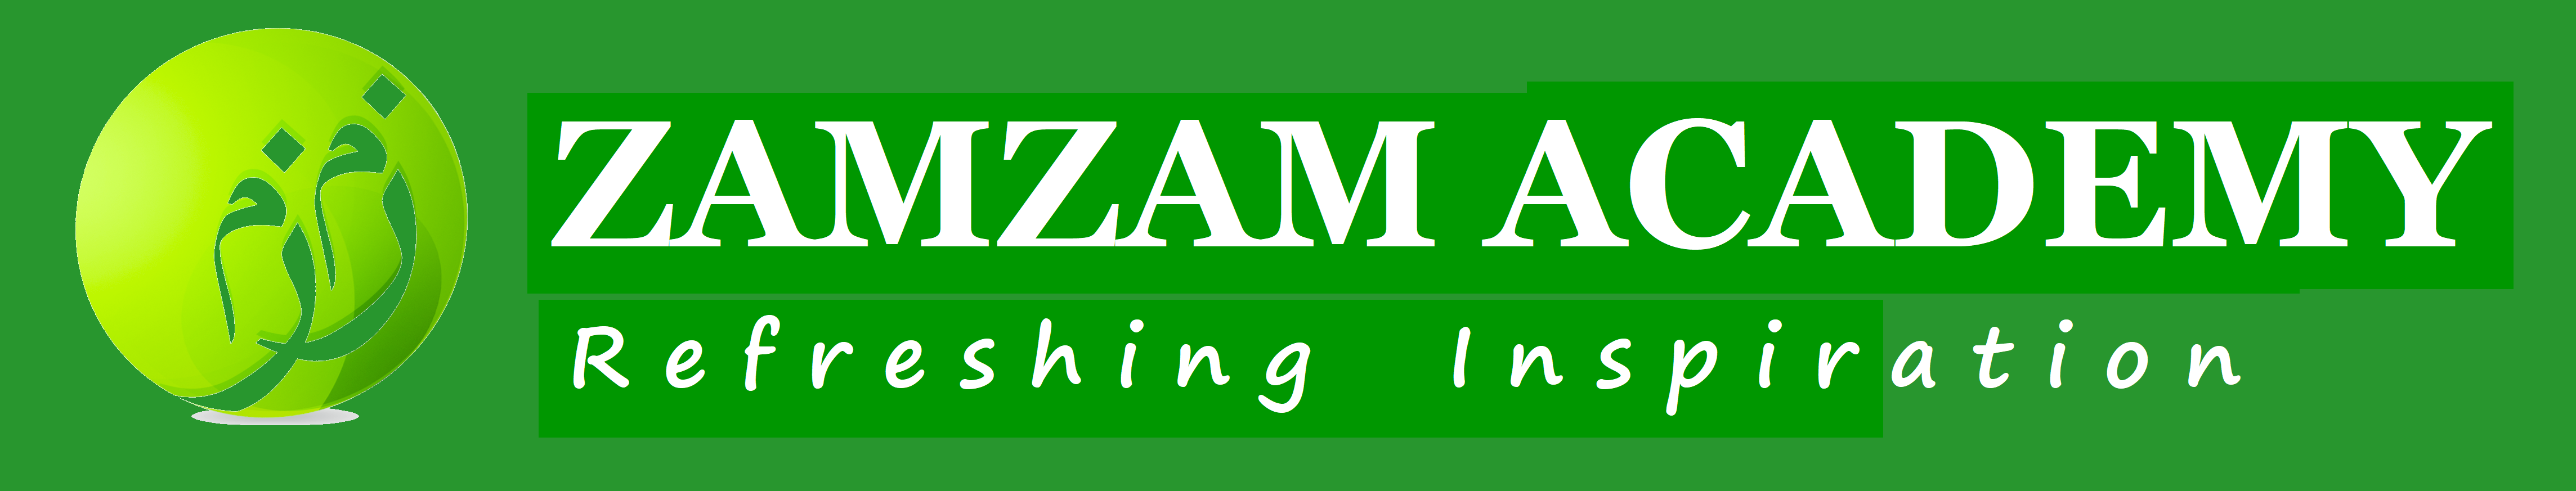 Zamzam Arabic name زمزم